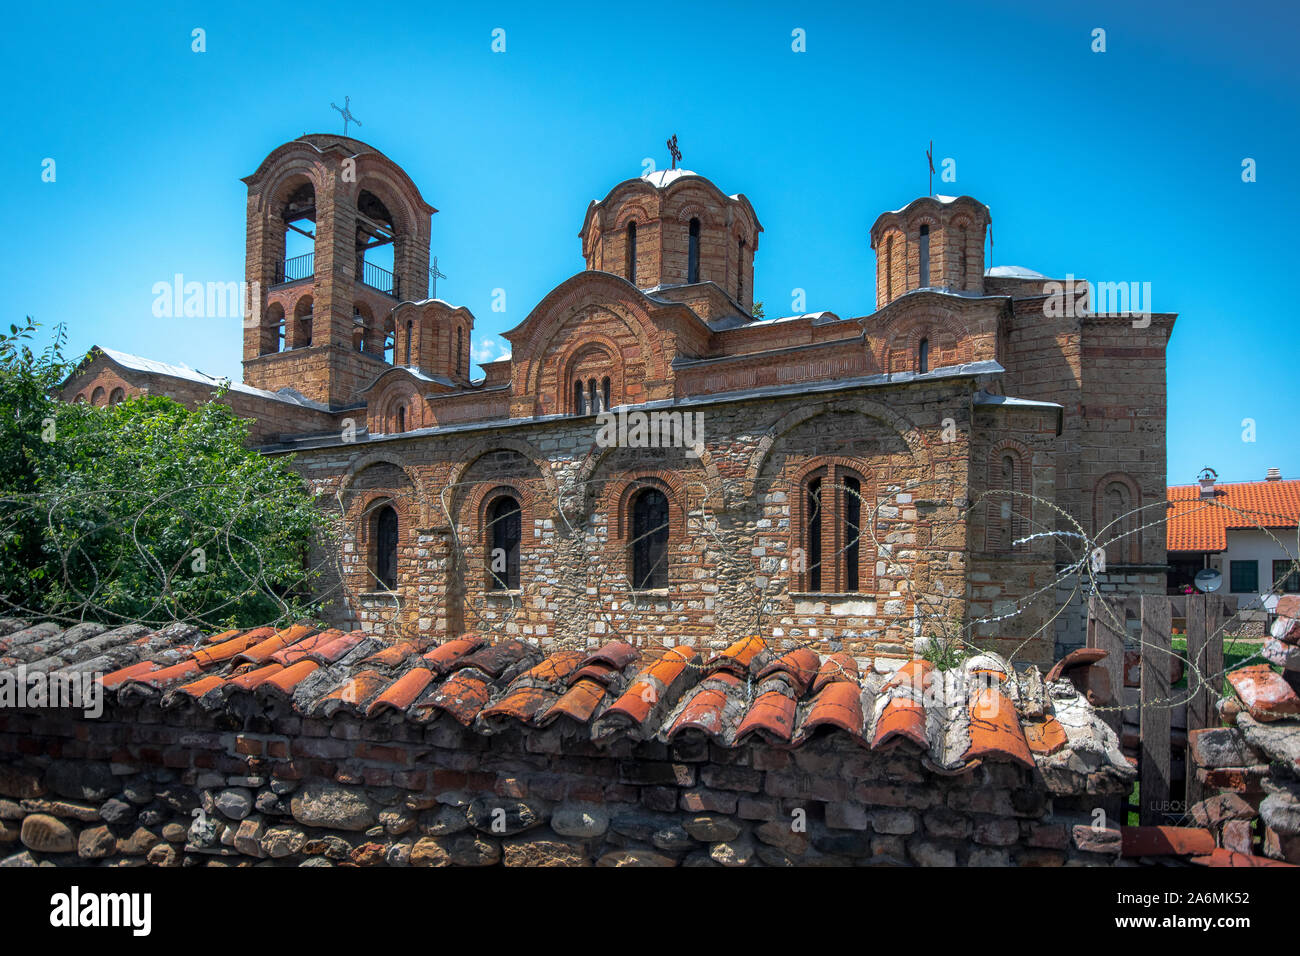 Église de la Vierge de Ljevisa. Prizren, Kosovo. Site du patrimoine mondial par l'UNESCO. Banque D'Images